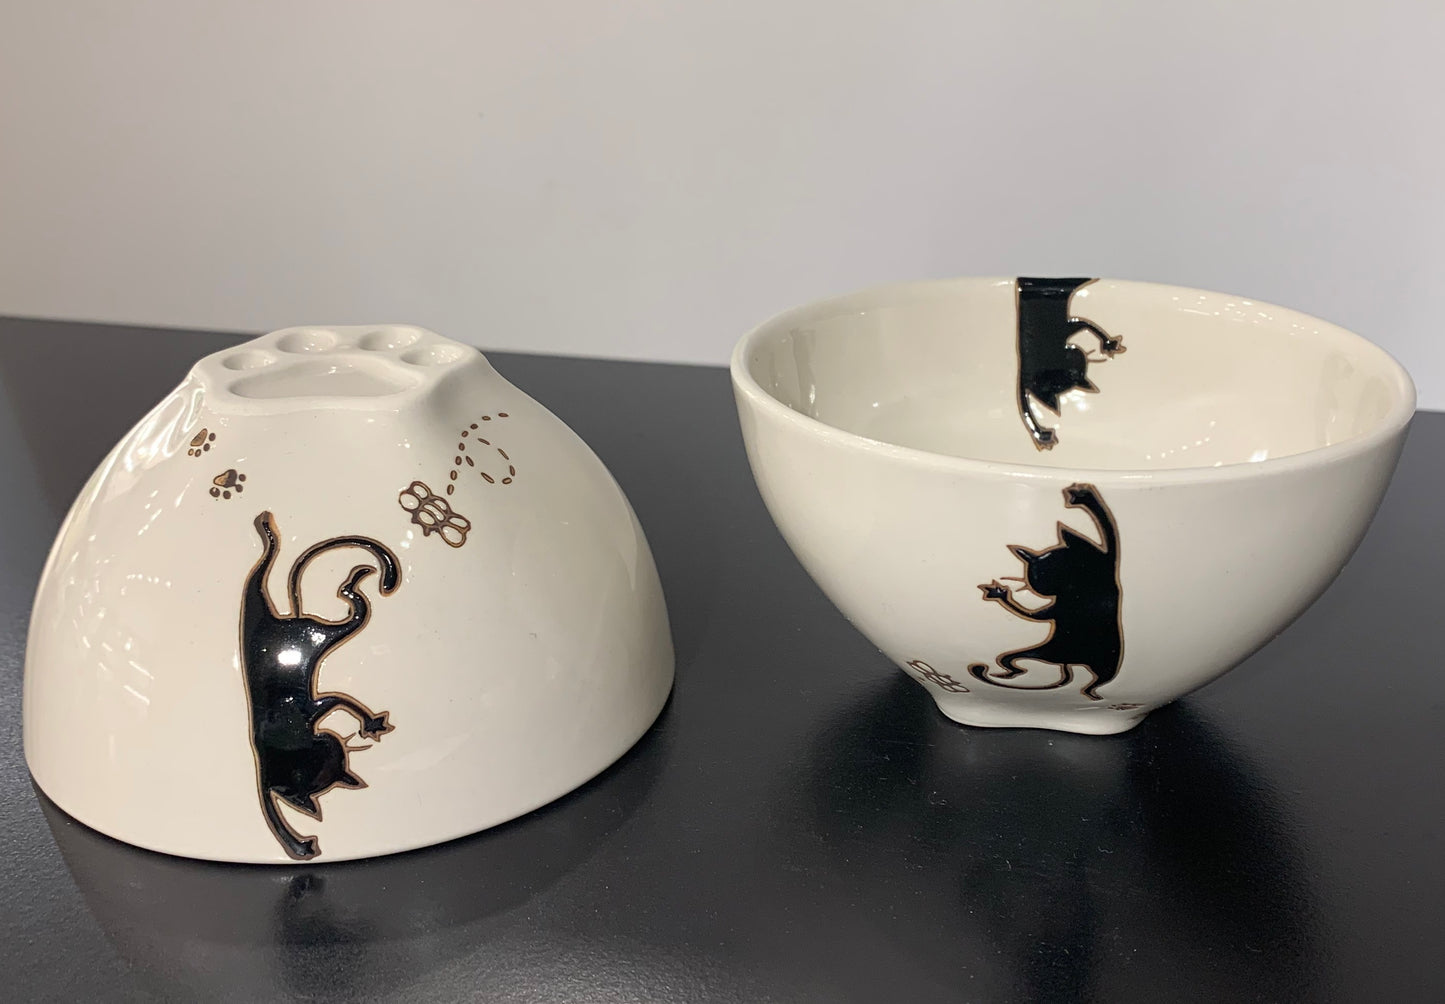 [Kikusho 陶器] [Hasami ware] [Hanging cat] [Paw bowl] [Tea bowl] (Mike Kuro) 猫图案可爱光印花布猫黑猫